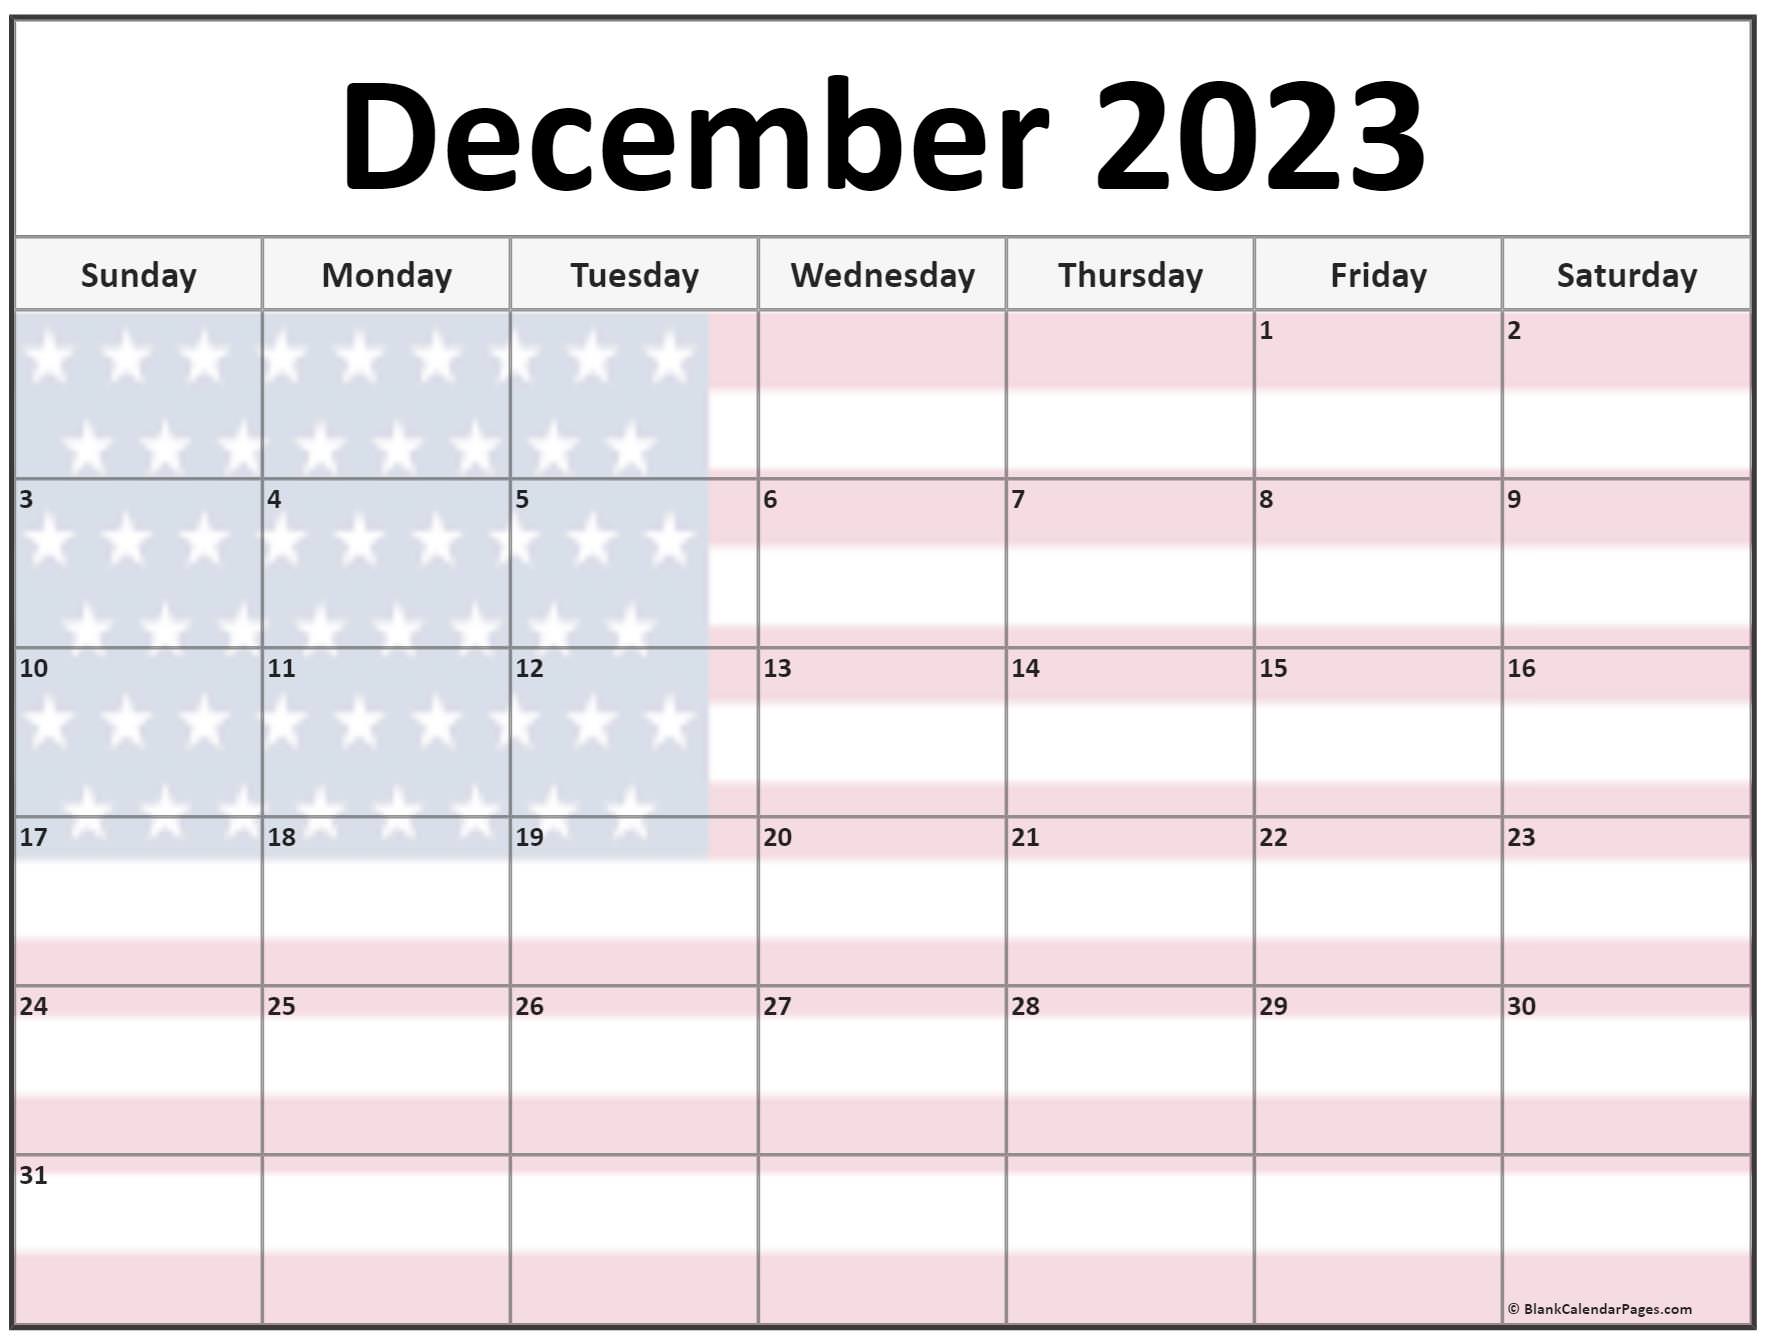 december-2023-calendar-usa-get-calender-2023-update